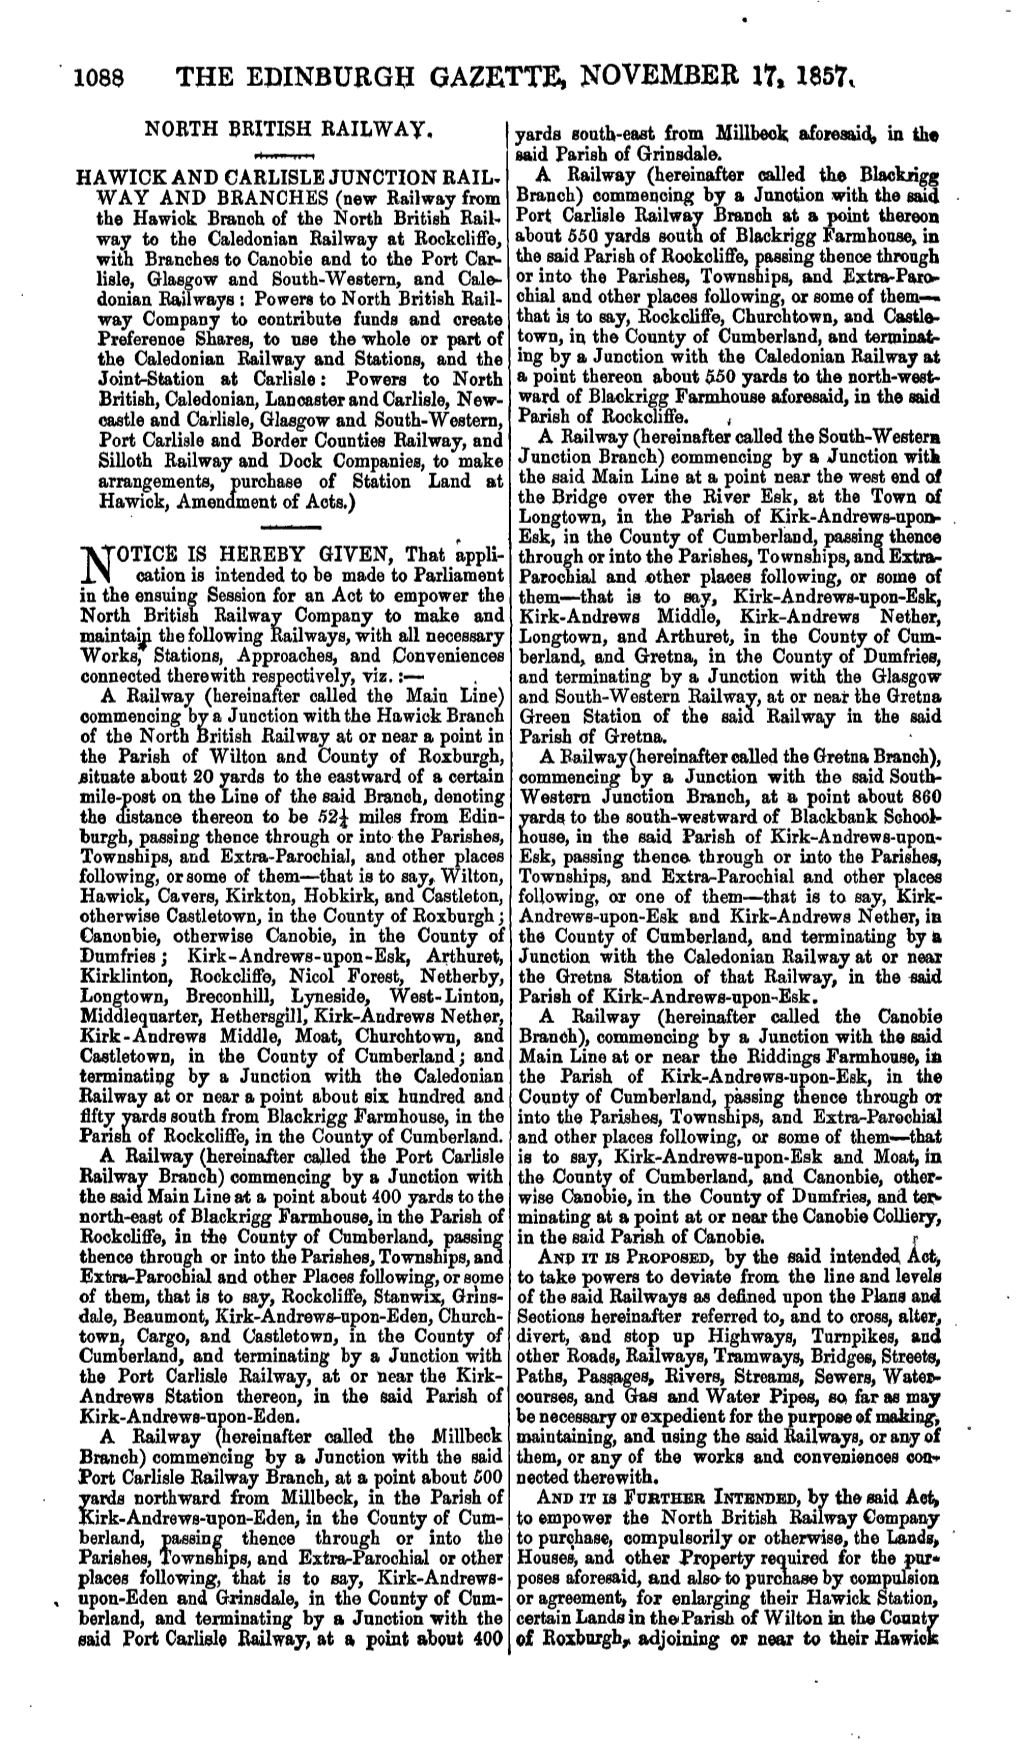 1088 the Edinburgh Gazette, November 17, 1857*